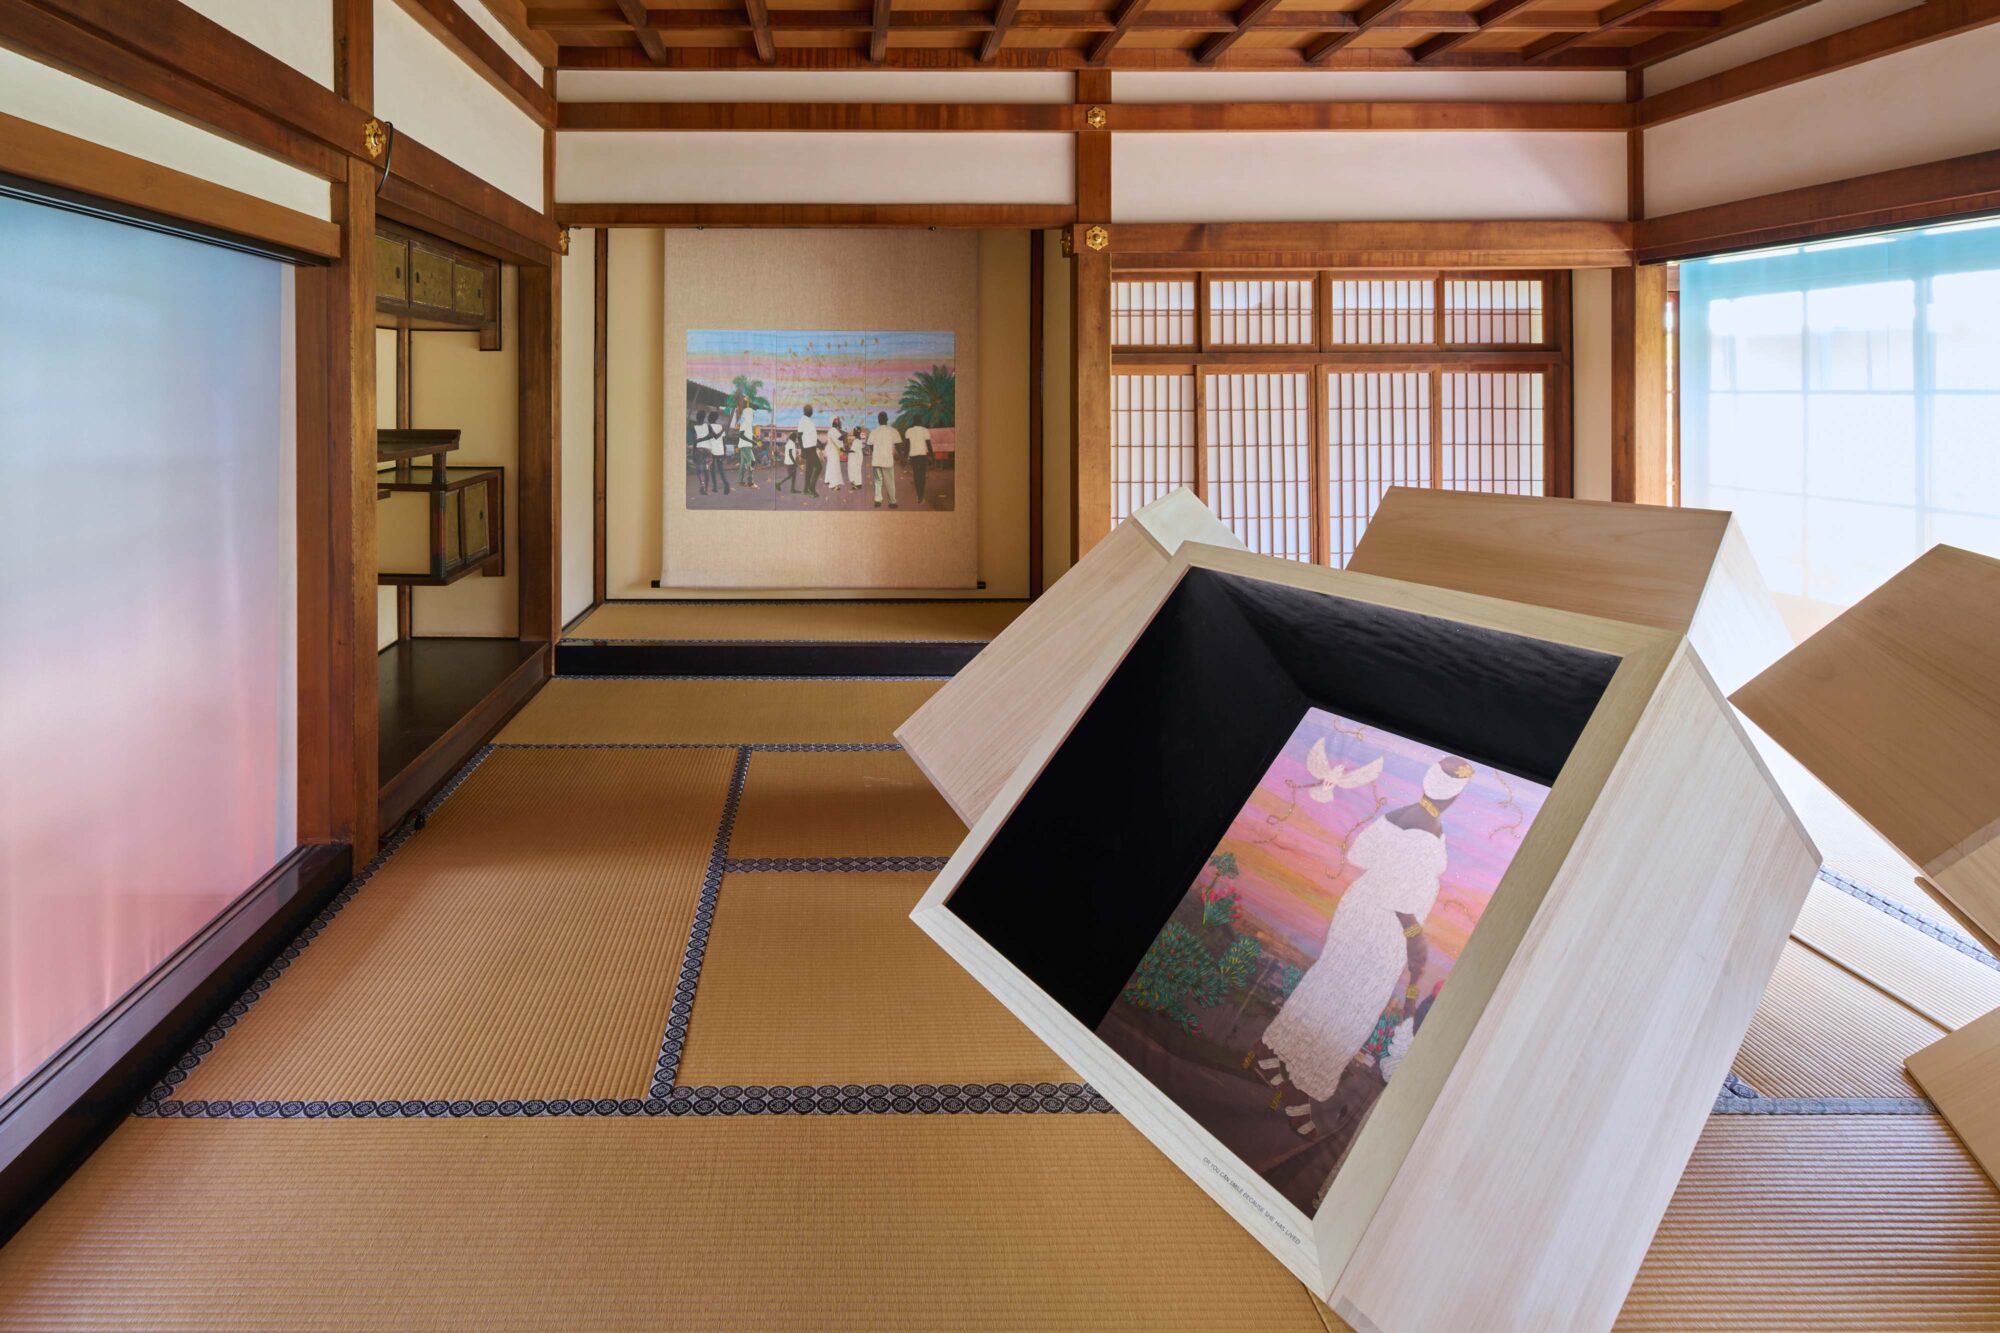 Installation view ©︎ Takeshi Asano-KYOTOGRAPHIE 2023
